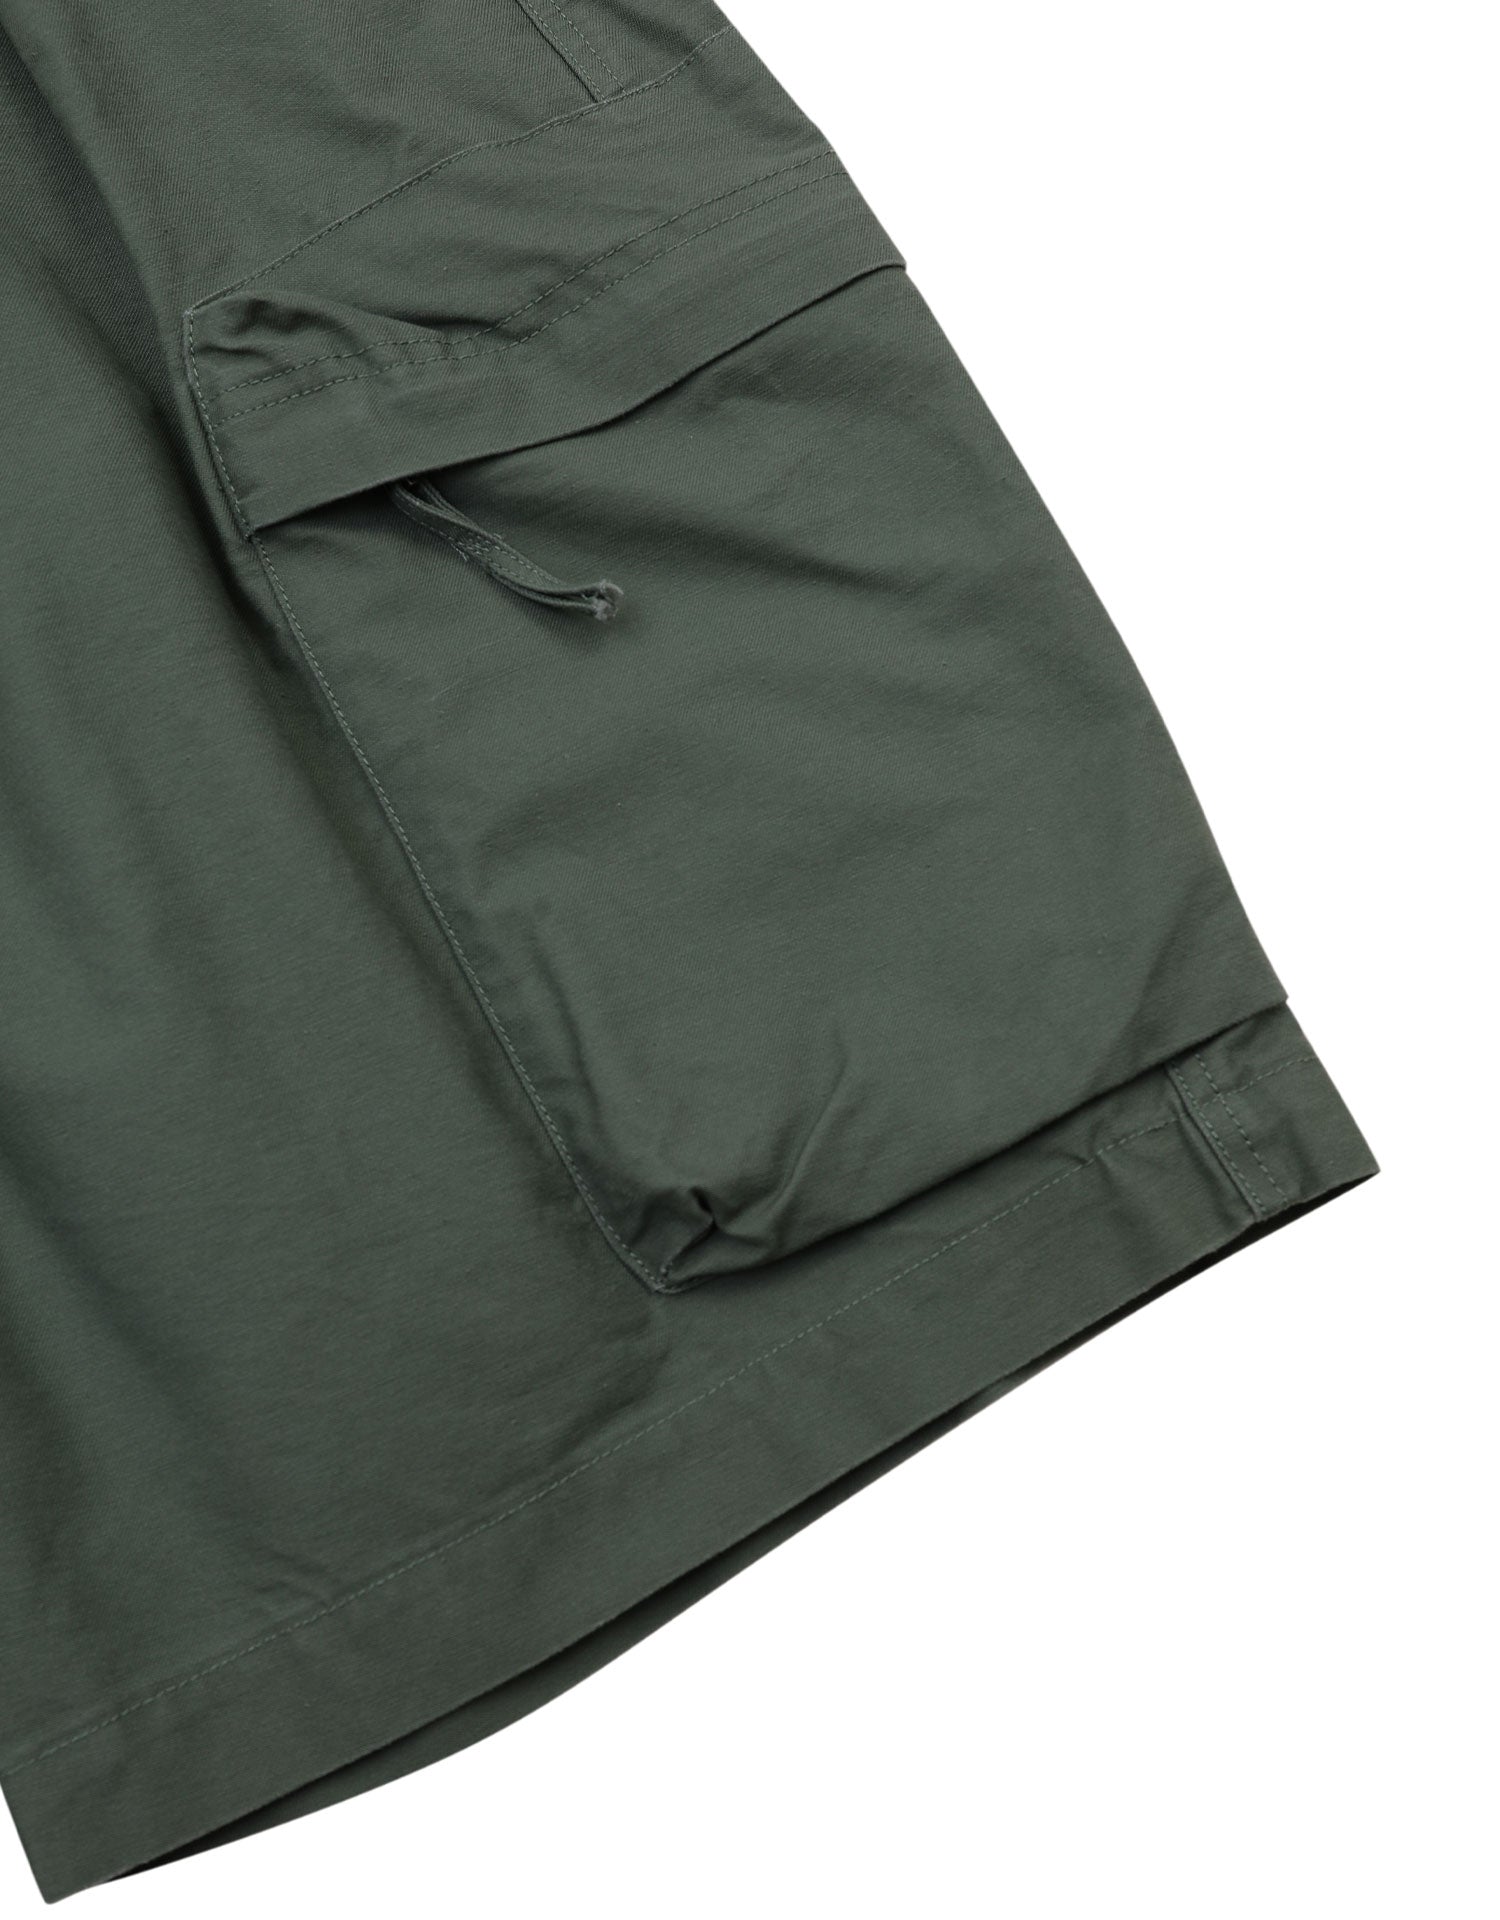 TopBasics Five Pockets Cargo Cotton Shorts